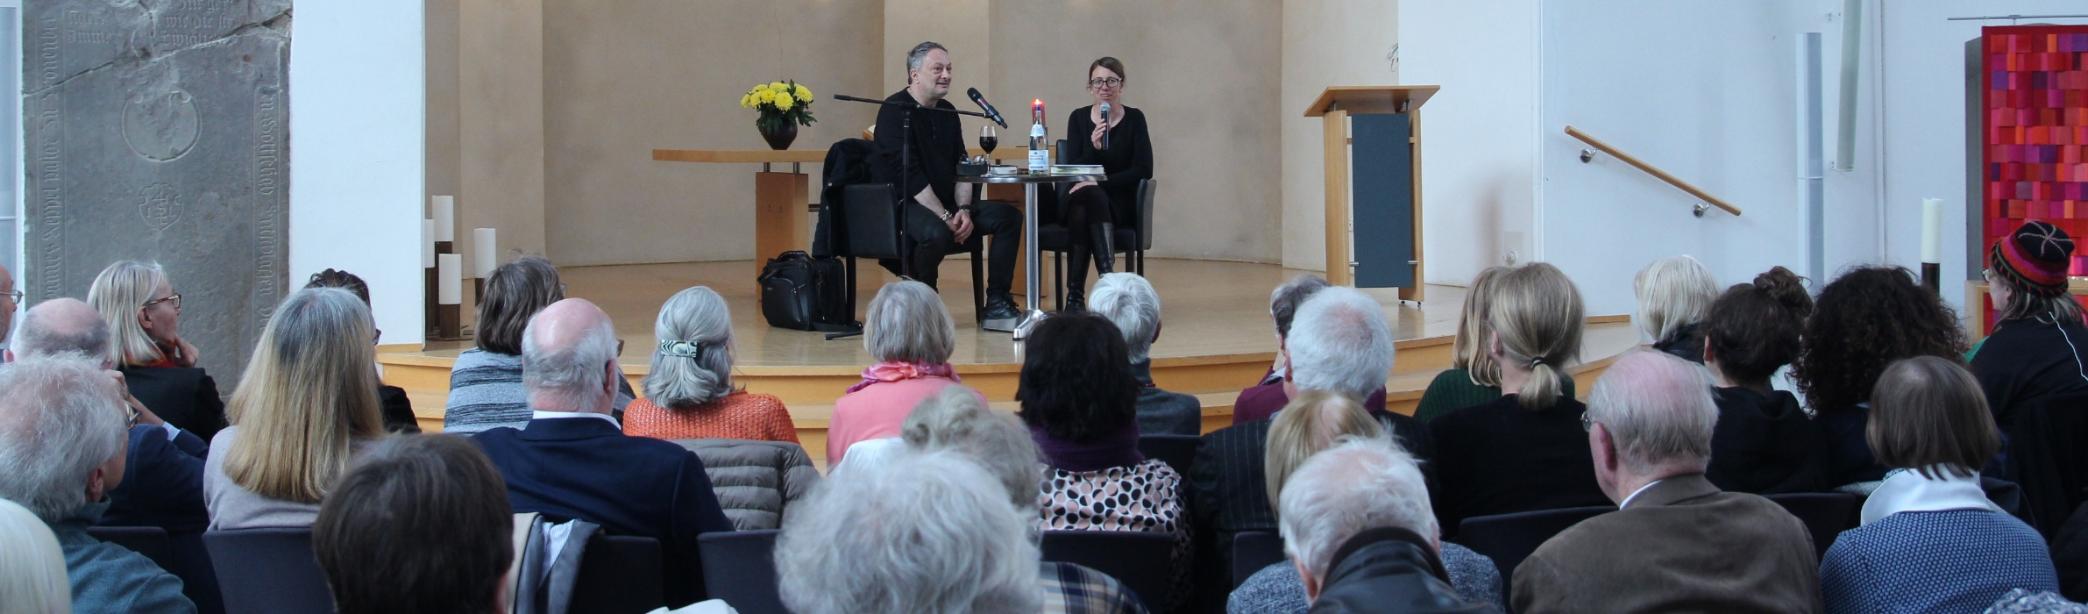 Feridun Zaimoglu im Interview mit Katja Schettler anlässlich einer Lesung in der Citykirche Wuppertal